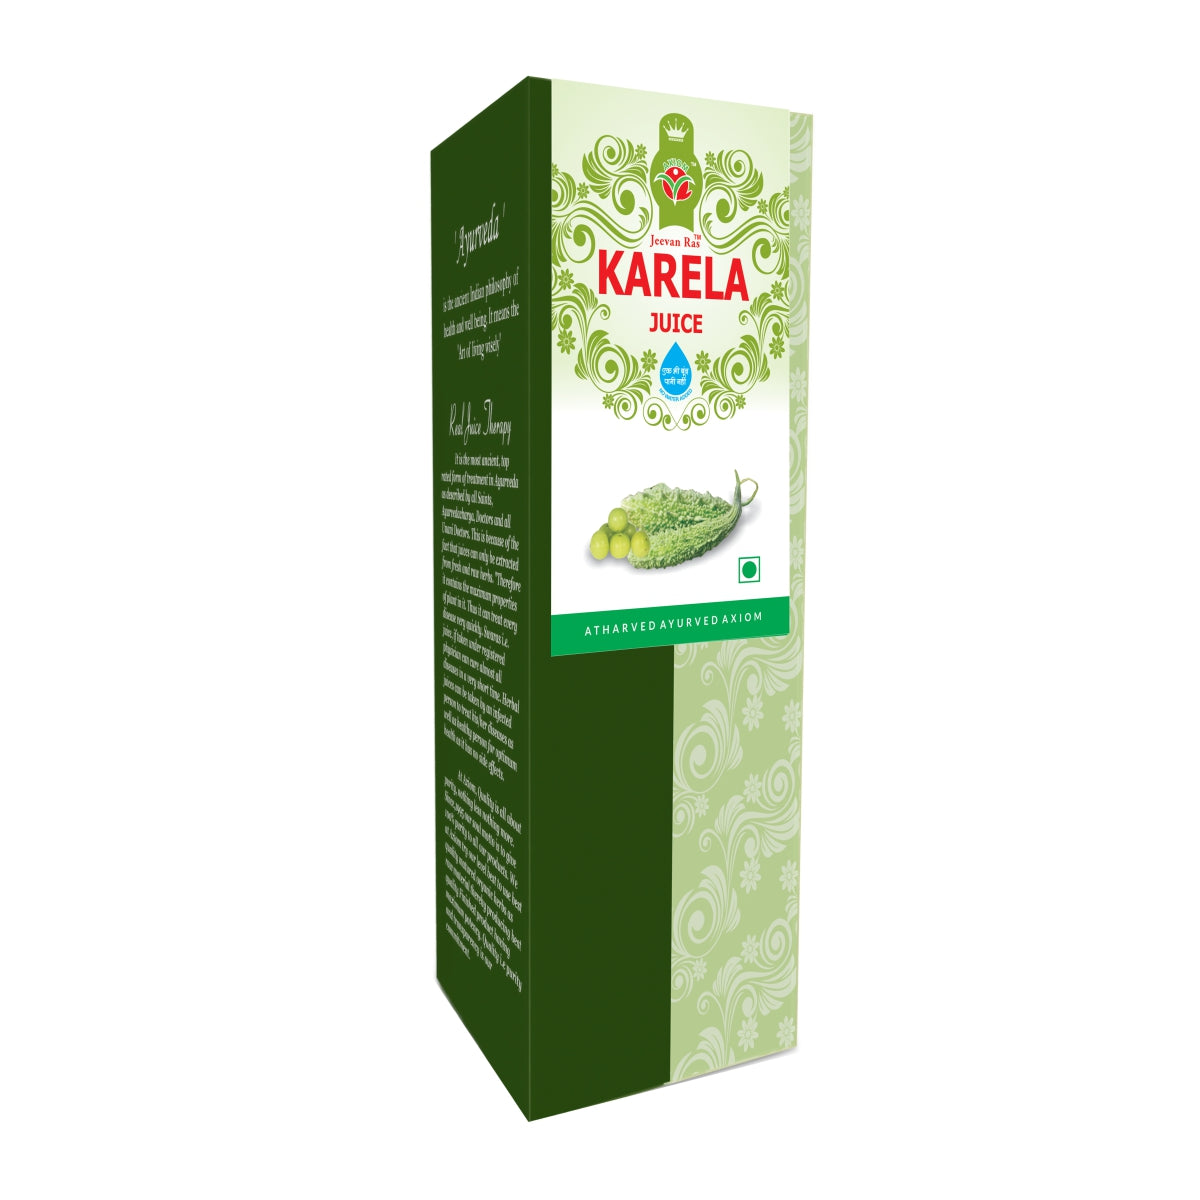 Karela Juice 500 ml Pack of (2)